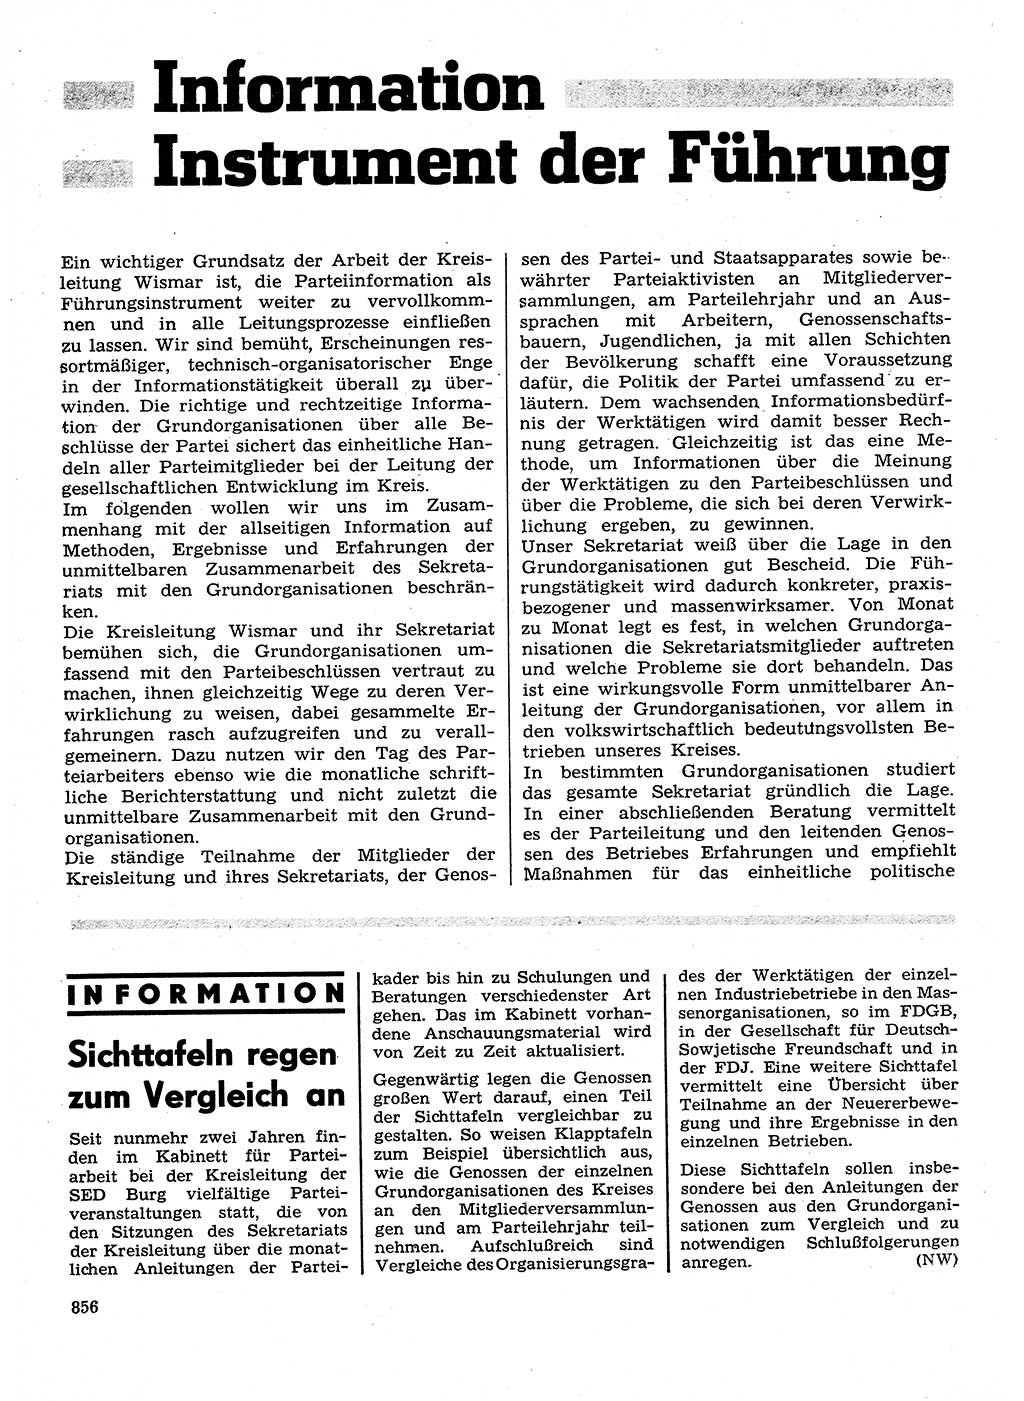 Neuer Weg (NW), Organ des Zentralkomitees (ZK) der SED (Sozialistische Einheitspartei Deutschlands) für Fragen des Parteilebens, 28. Jahrgang [Deutsche Demokratische Republik (DDR)] 1973, Seite 856 (NW ZK SED DDR 1973, S. 856)